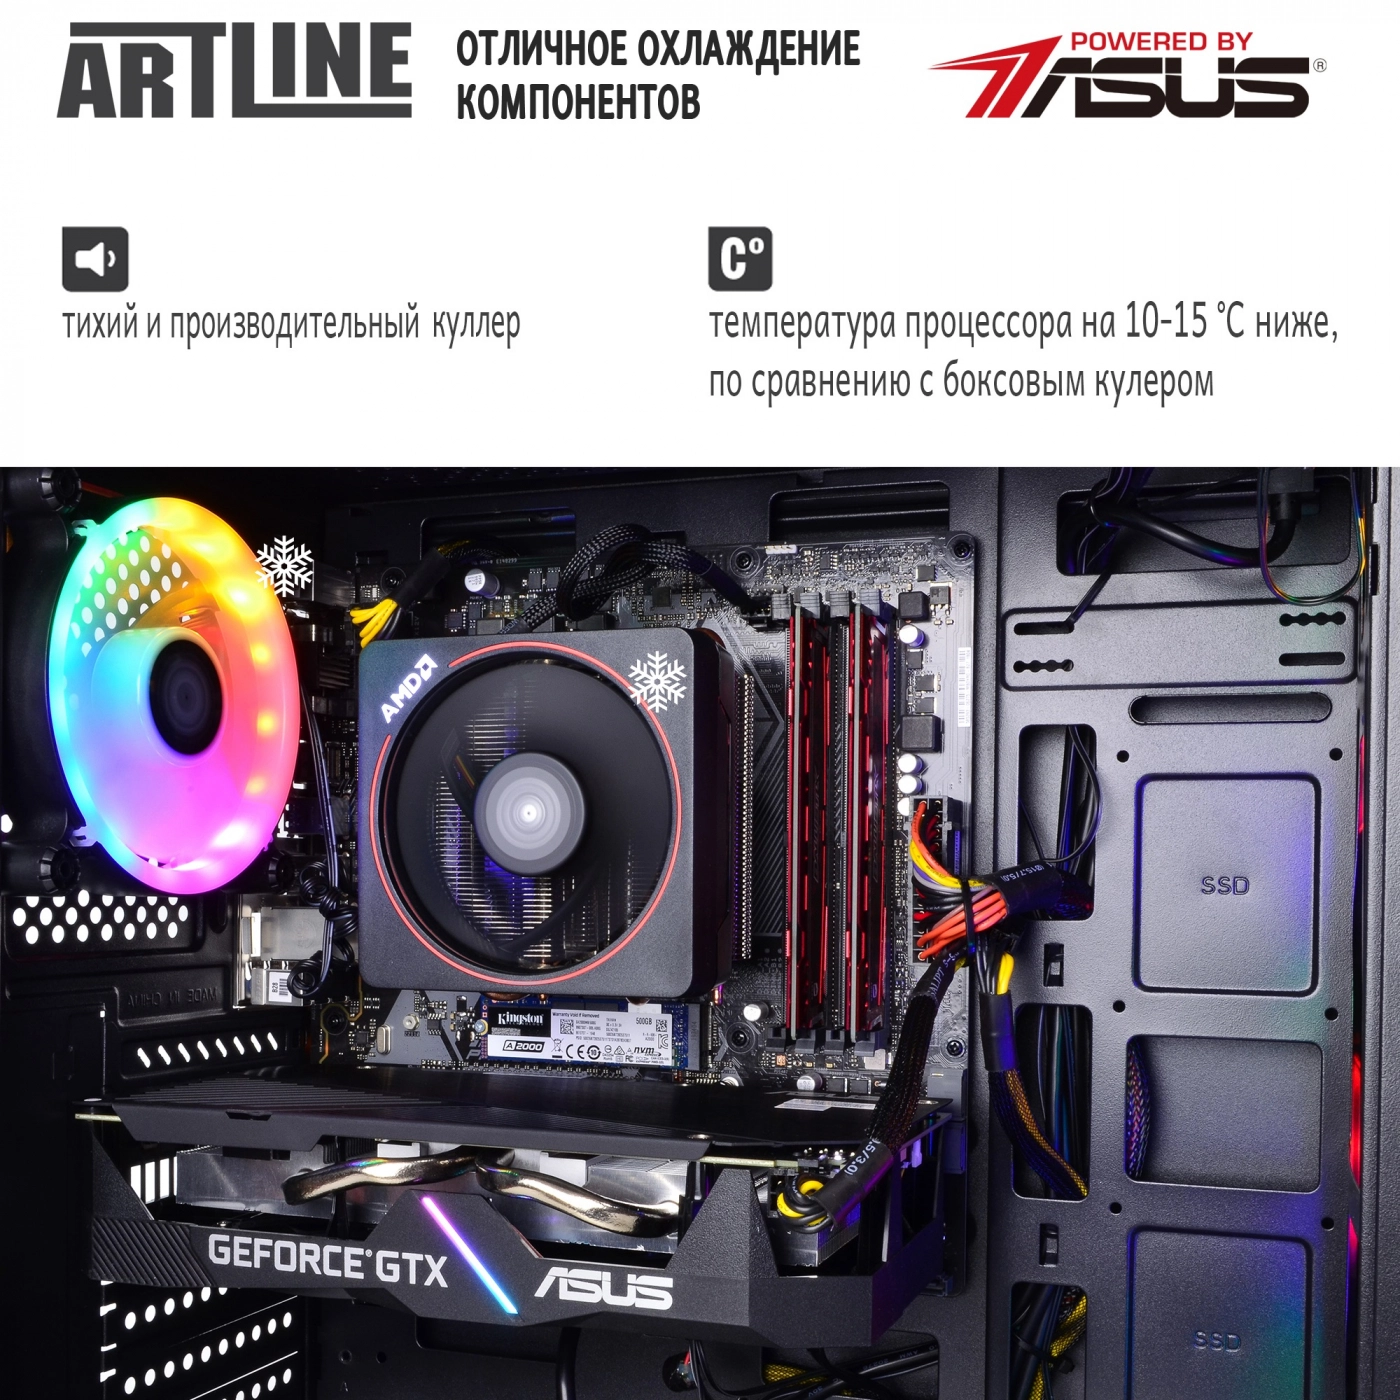 Купить Компьютер ARTLINE Gaming X68v02 - фото 7